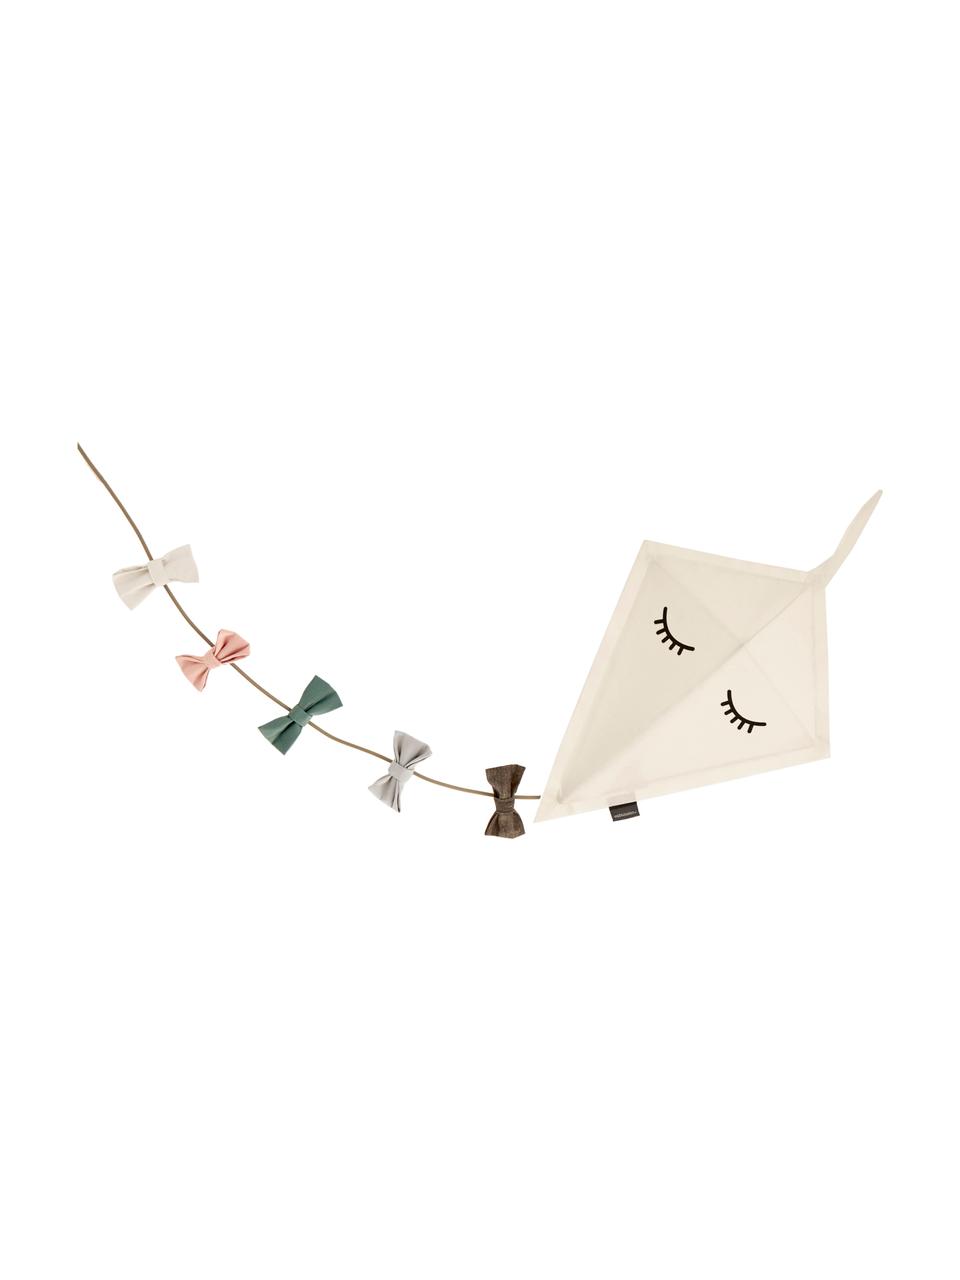 Wandlamp Kite met stekker, Decoratie: katoen, Frame: gepoedercoat metaal, Wit, multicolour, B 40 x H 52 cm